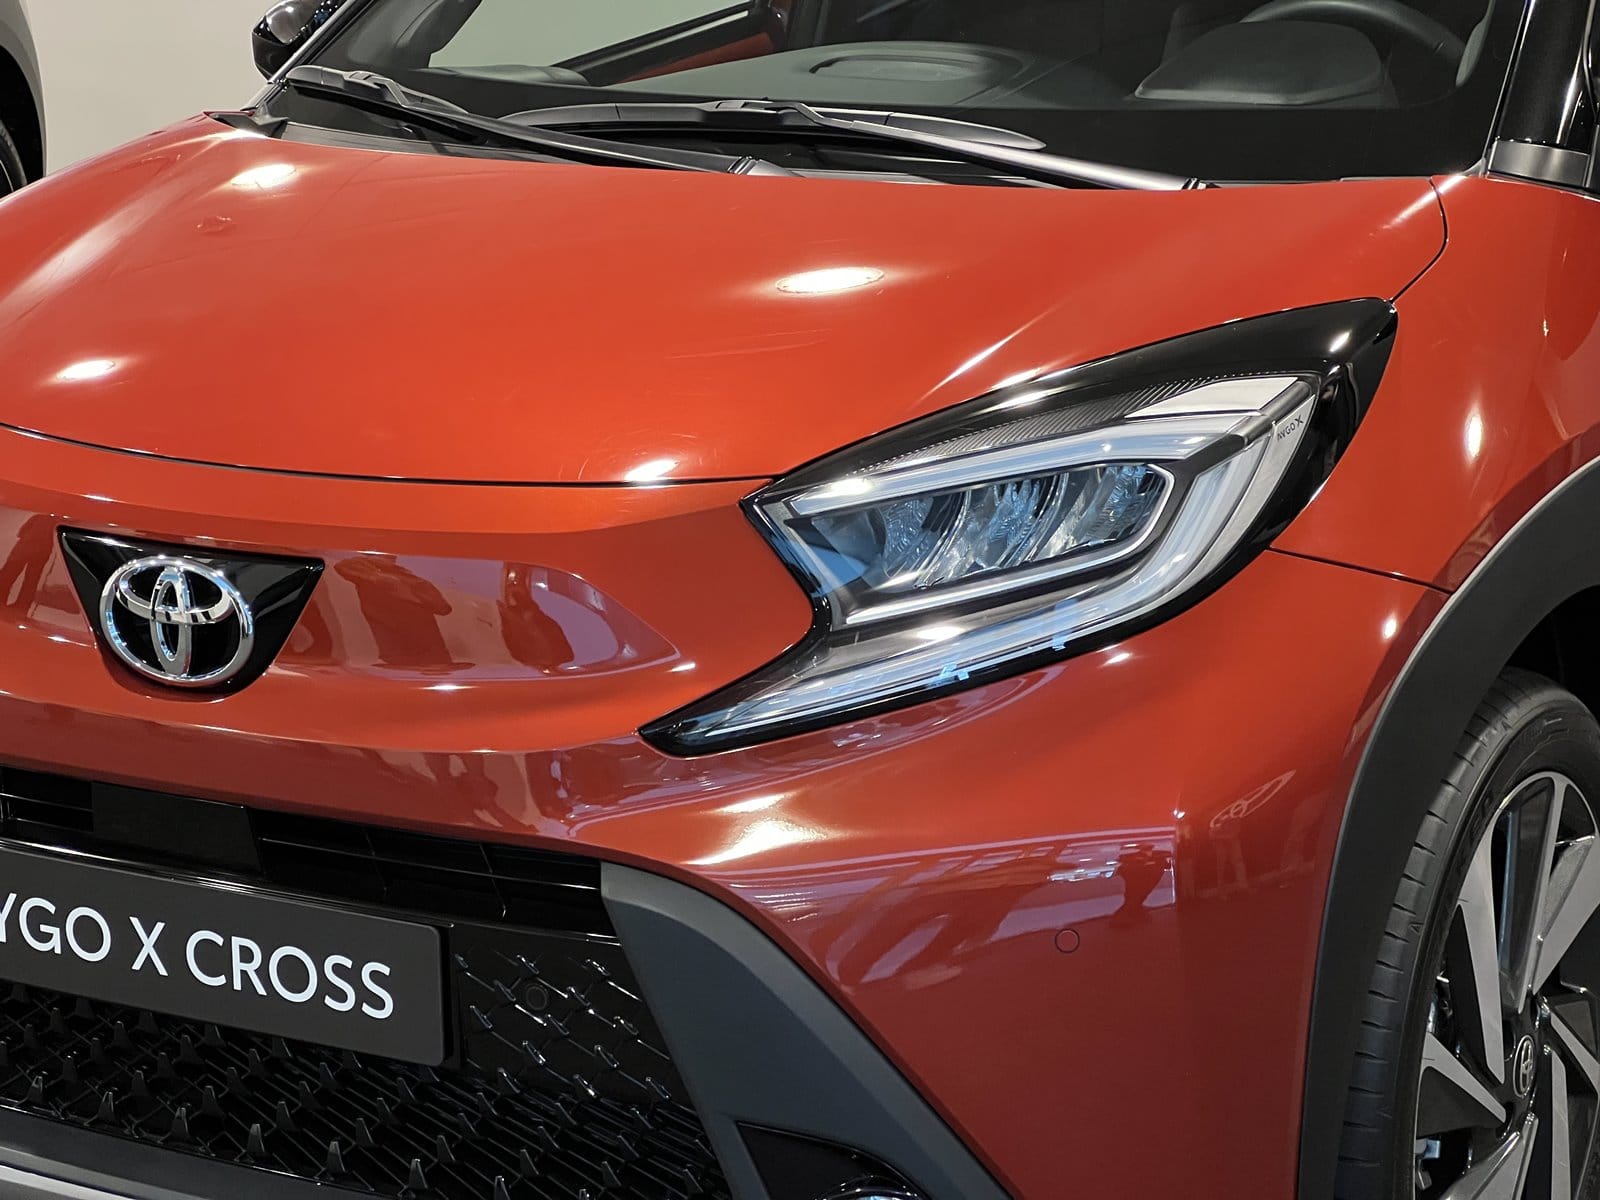 We know the Toyota Aygo X Cross live: a rare bird